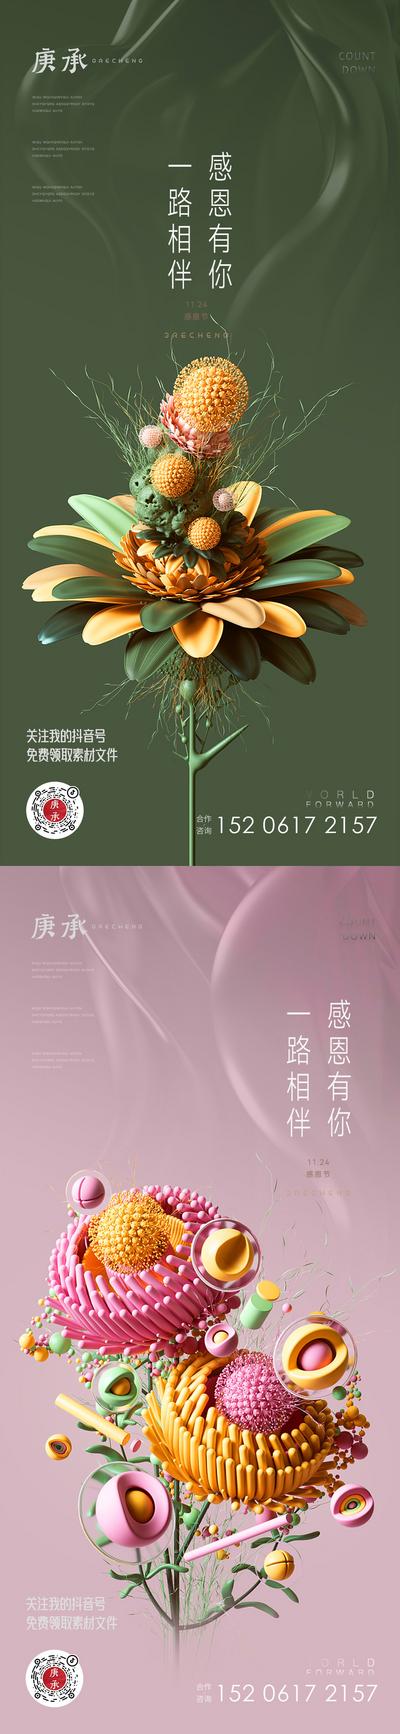 南门网 海报 地产 公历节日 感恩节 花朵 花卉 花瓣 创意